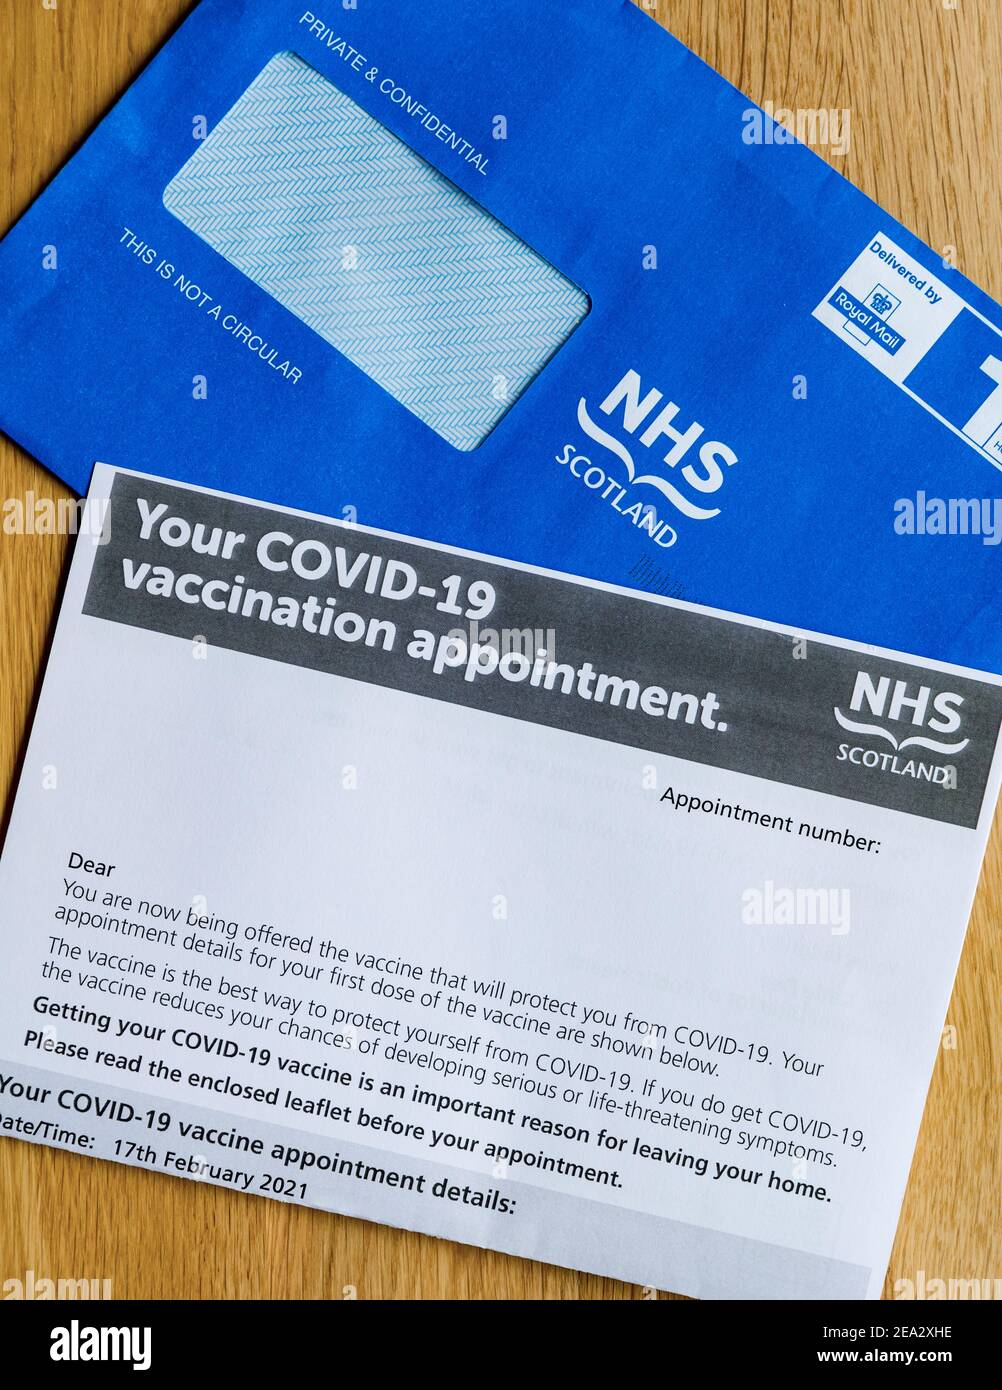 Blauer Umschlag von NHS Schottland und Brief zur Verabreichung von Impfstoffen während der Coronavirus-Pandemie Covid-19, Großbritannien Stockfoto